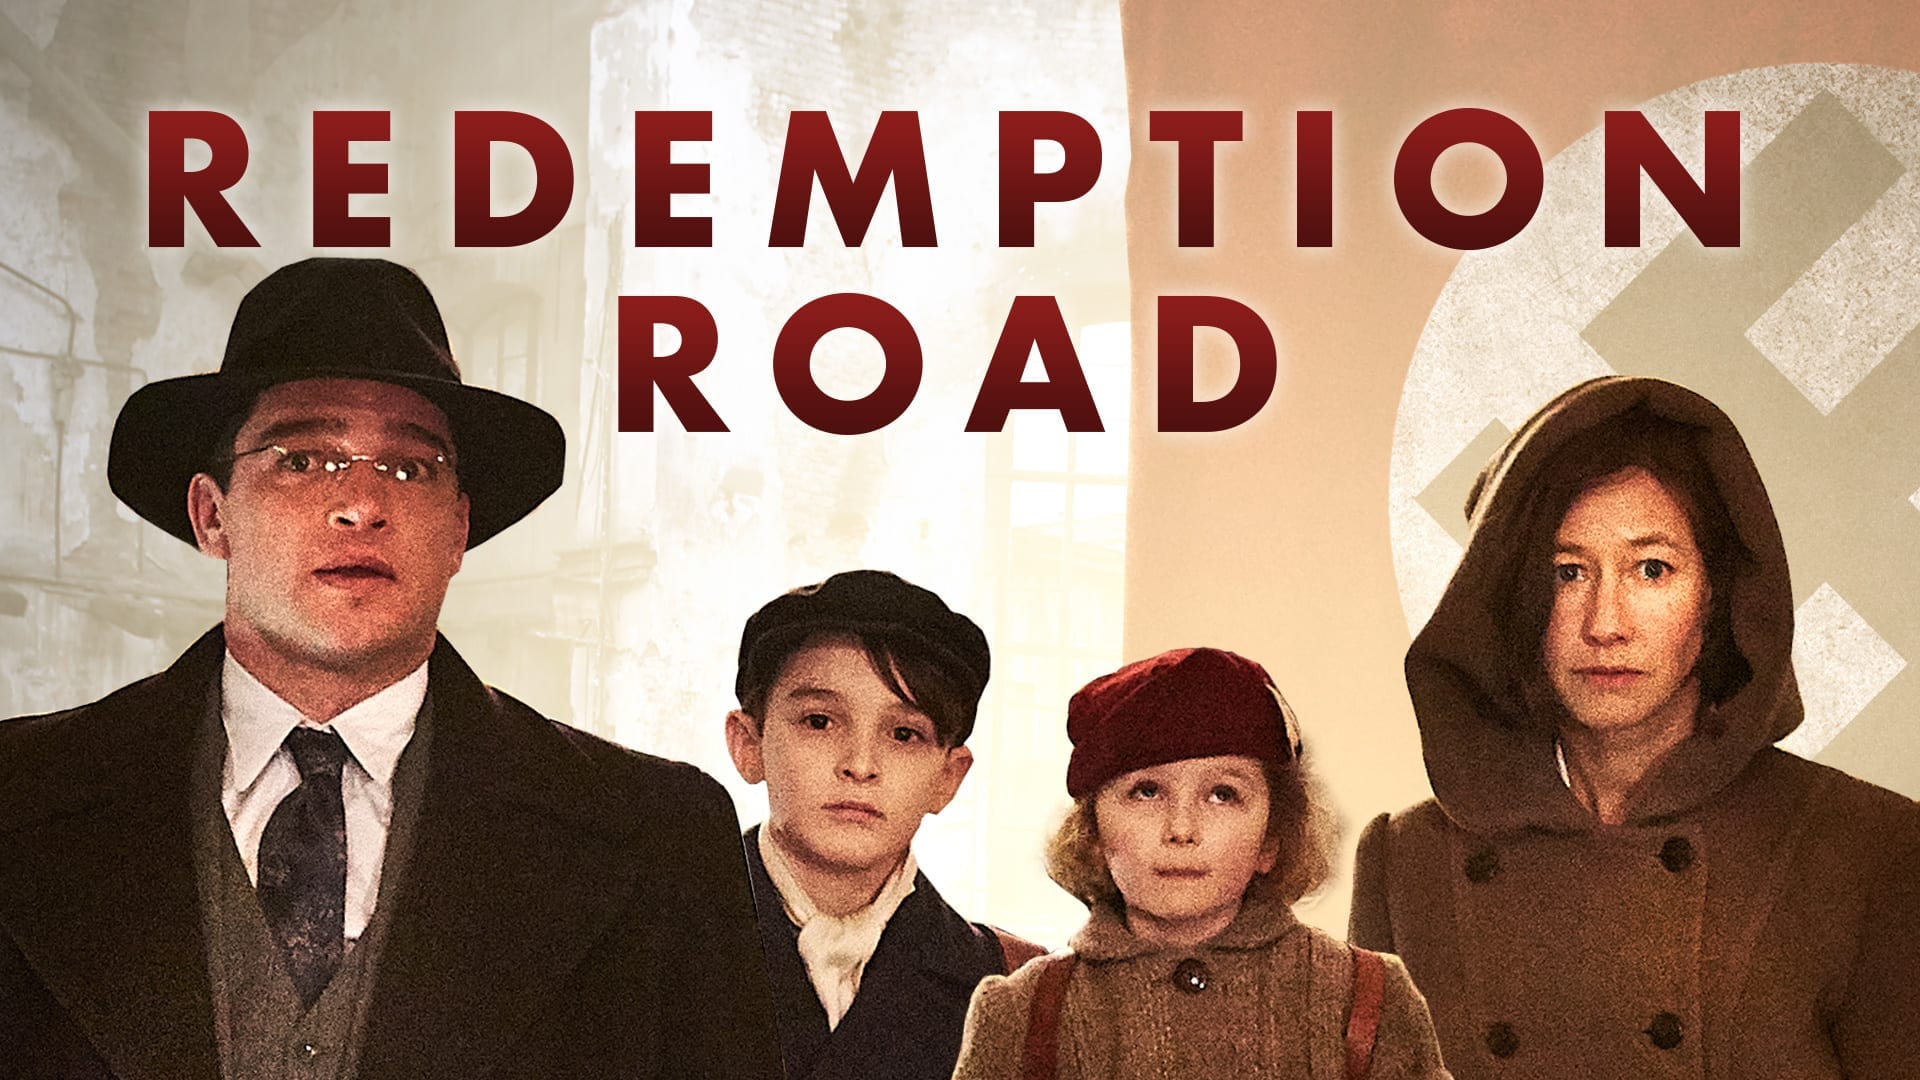 redemption road vimeo ott series banner 1920x1080 1